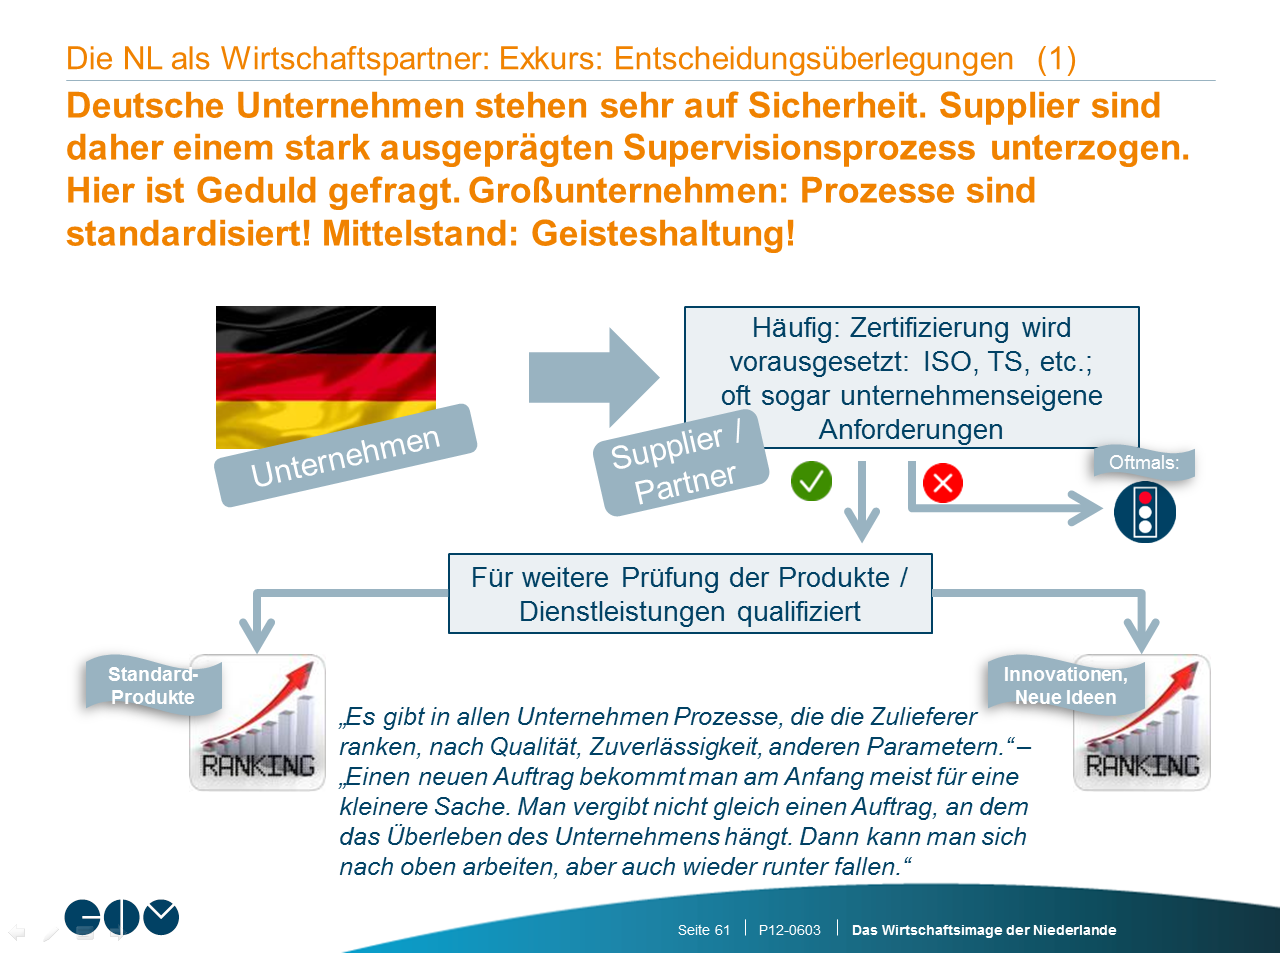 [vertaling afbeelding] NL als economische partner: uitweiding: afwegingen bij beslissingen (1) Duitse bedrijven hechten veel waarde aan betrouwbaarheid.